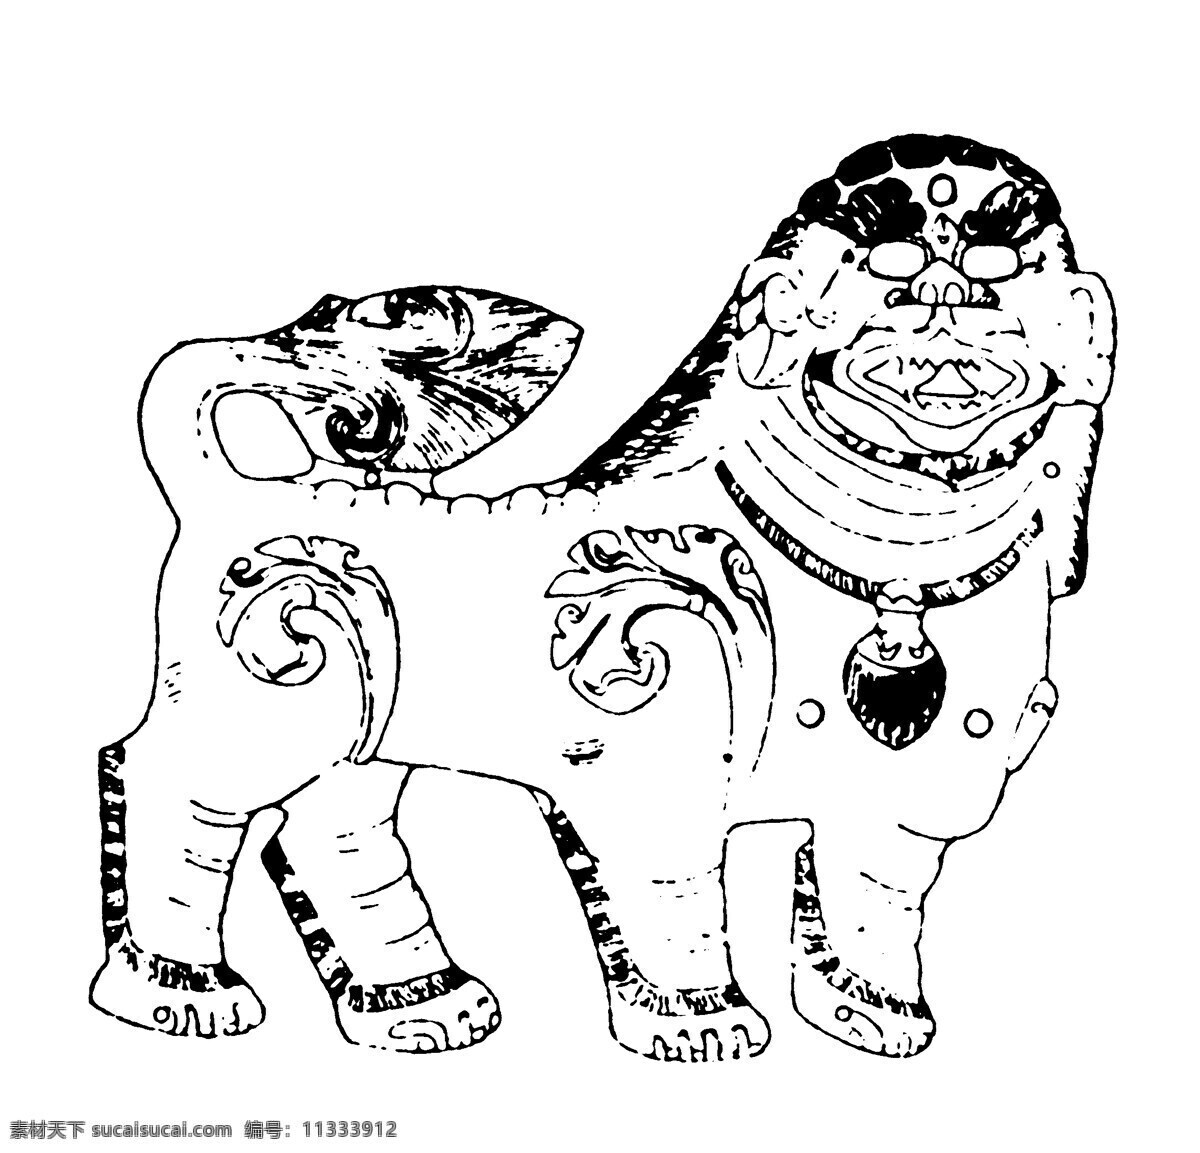 石狮图案 清代图案 中国 传统 图案 设计素材 装饰图案 书画美术 白色